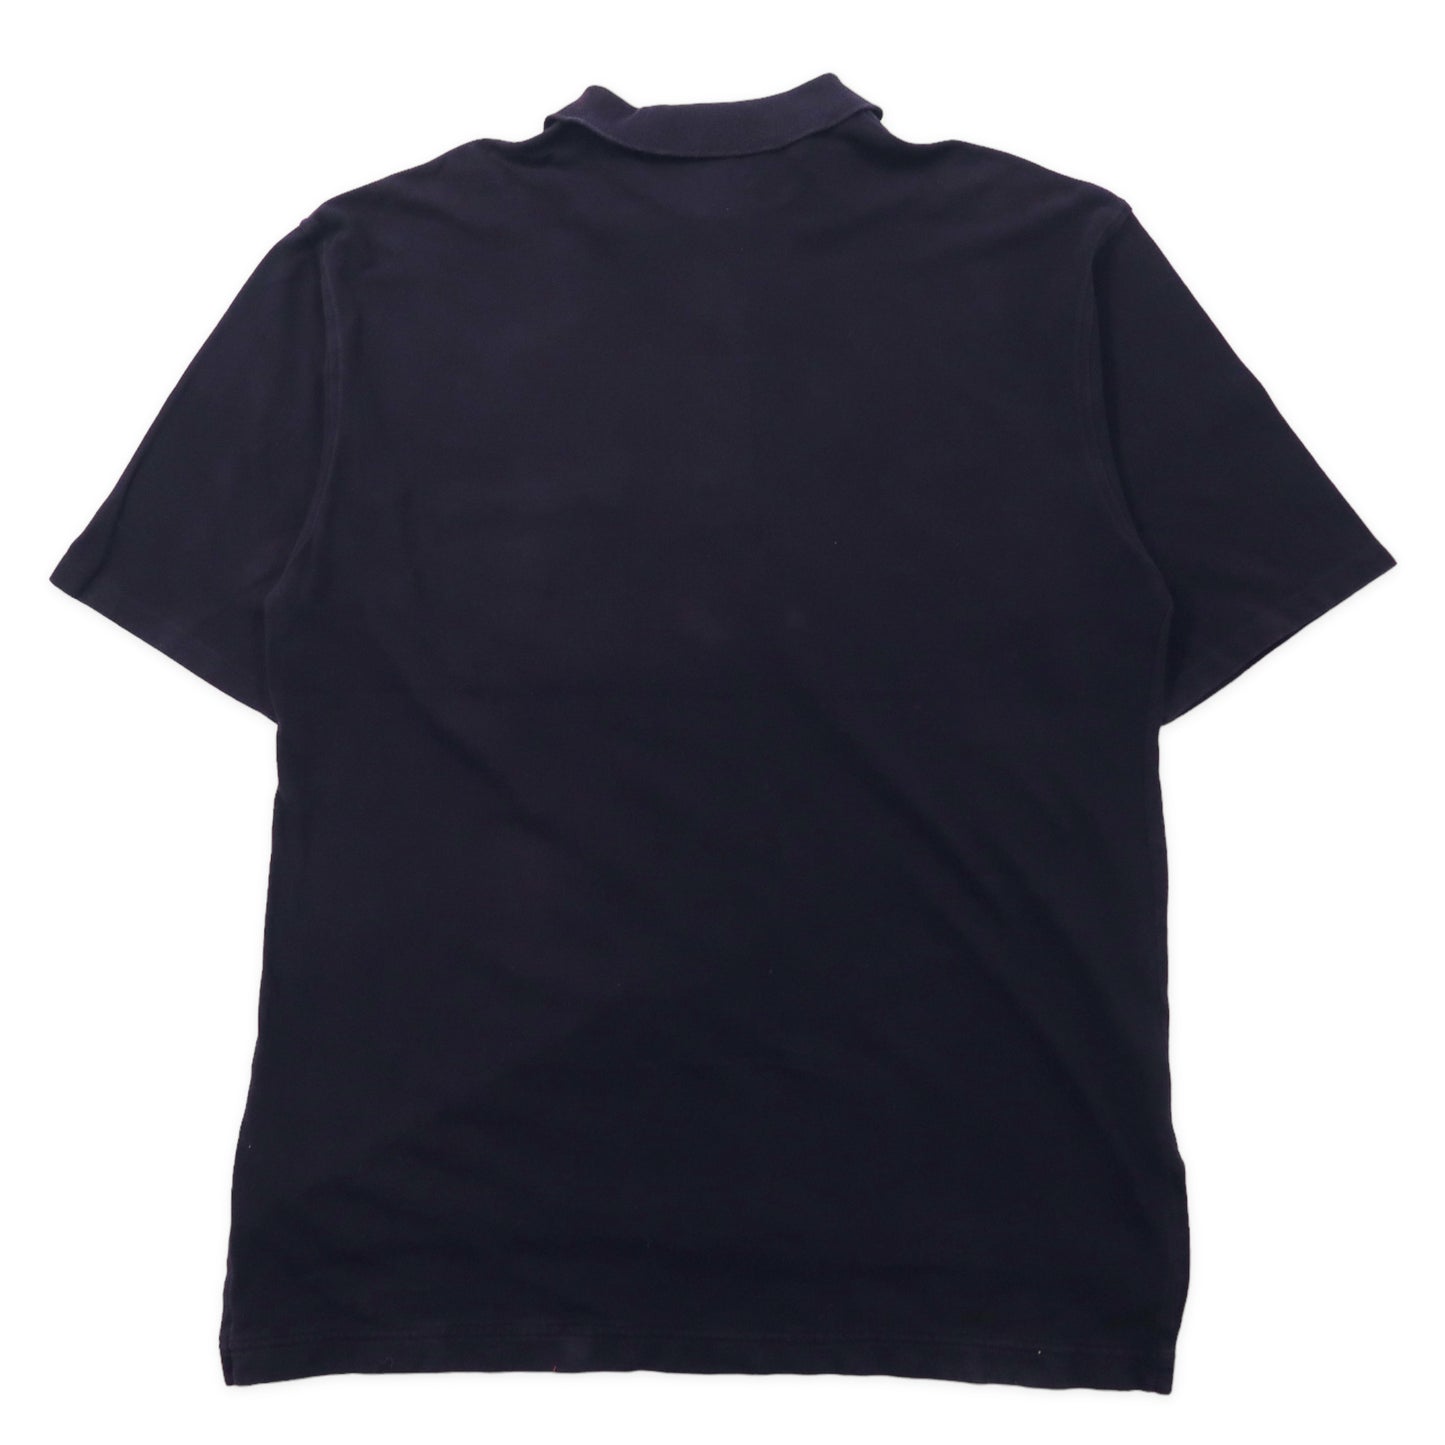 COACH USA製 ポロシャツ XL ブラック コットン ビッグサイズ